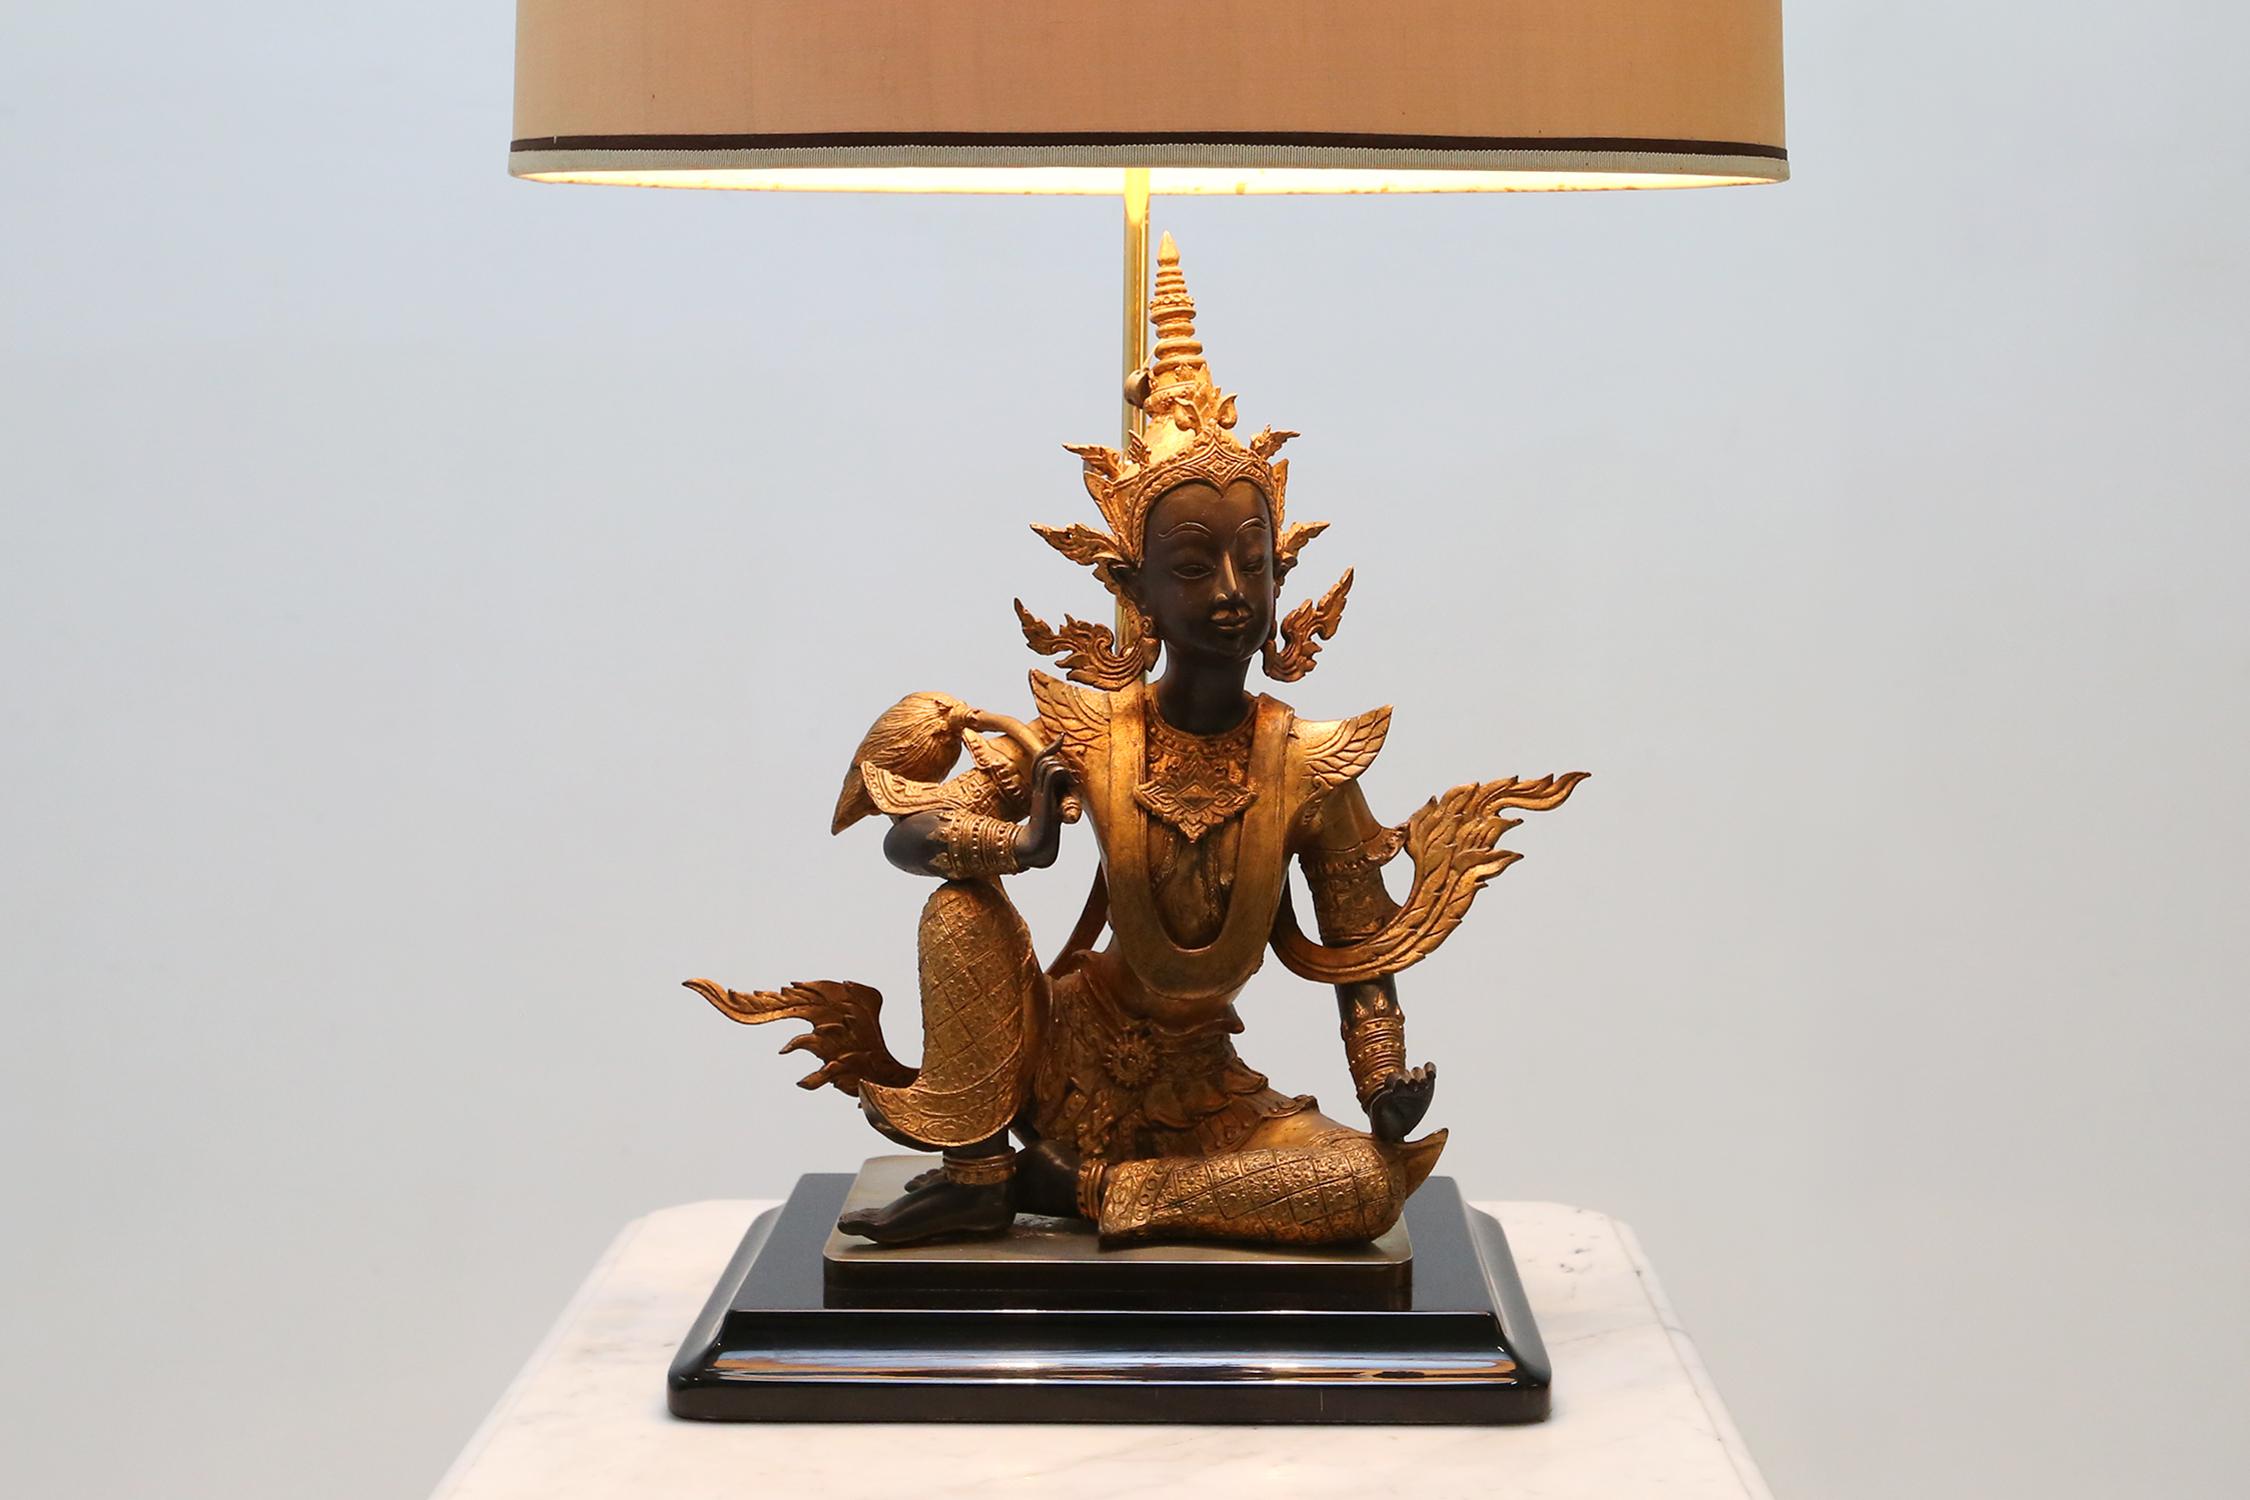 Lampe de table Bouddha assis en bronze doré de la période Rattanakosin.

La figurine est faite de bronze doré et présente de jolis détails dans les vêtements et les accessoires.